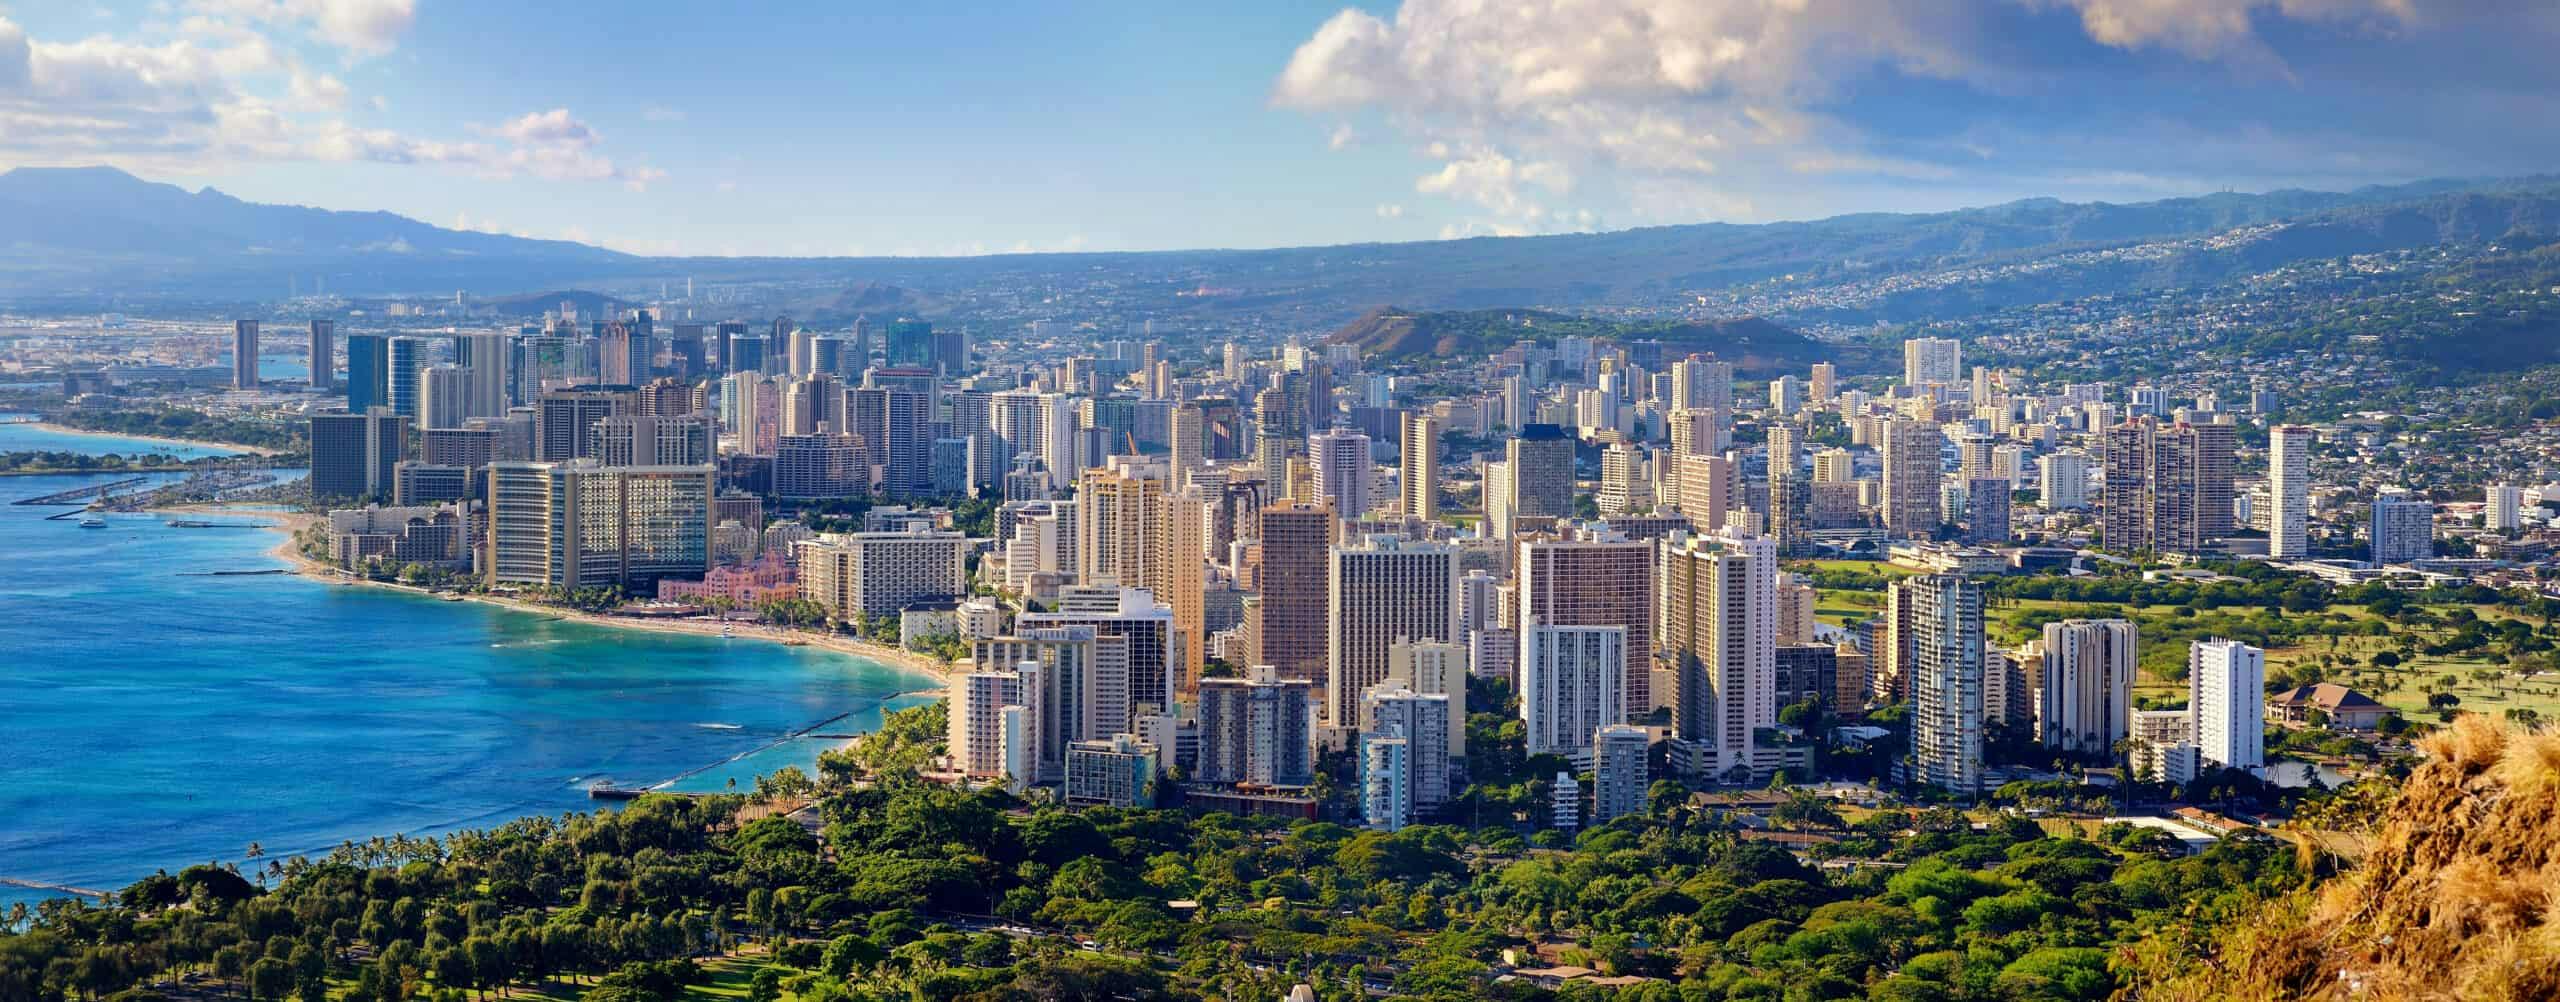 Honolulu waikiki hotels scaled